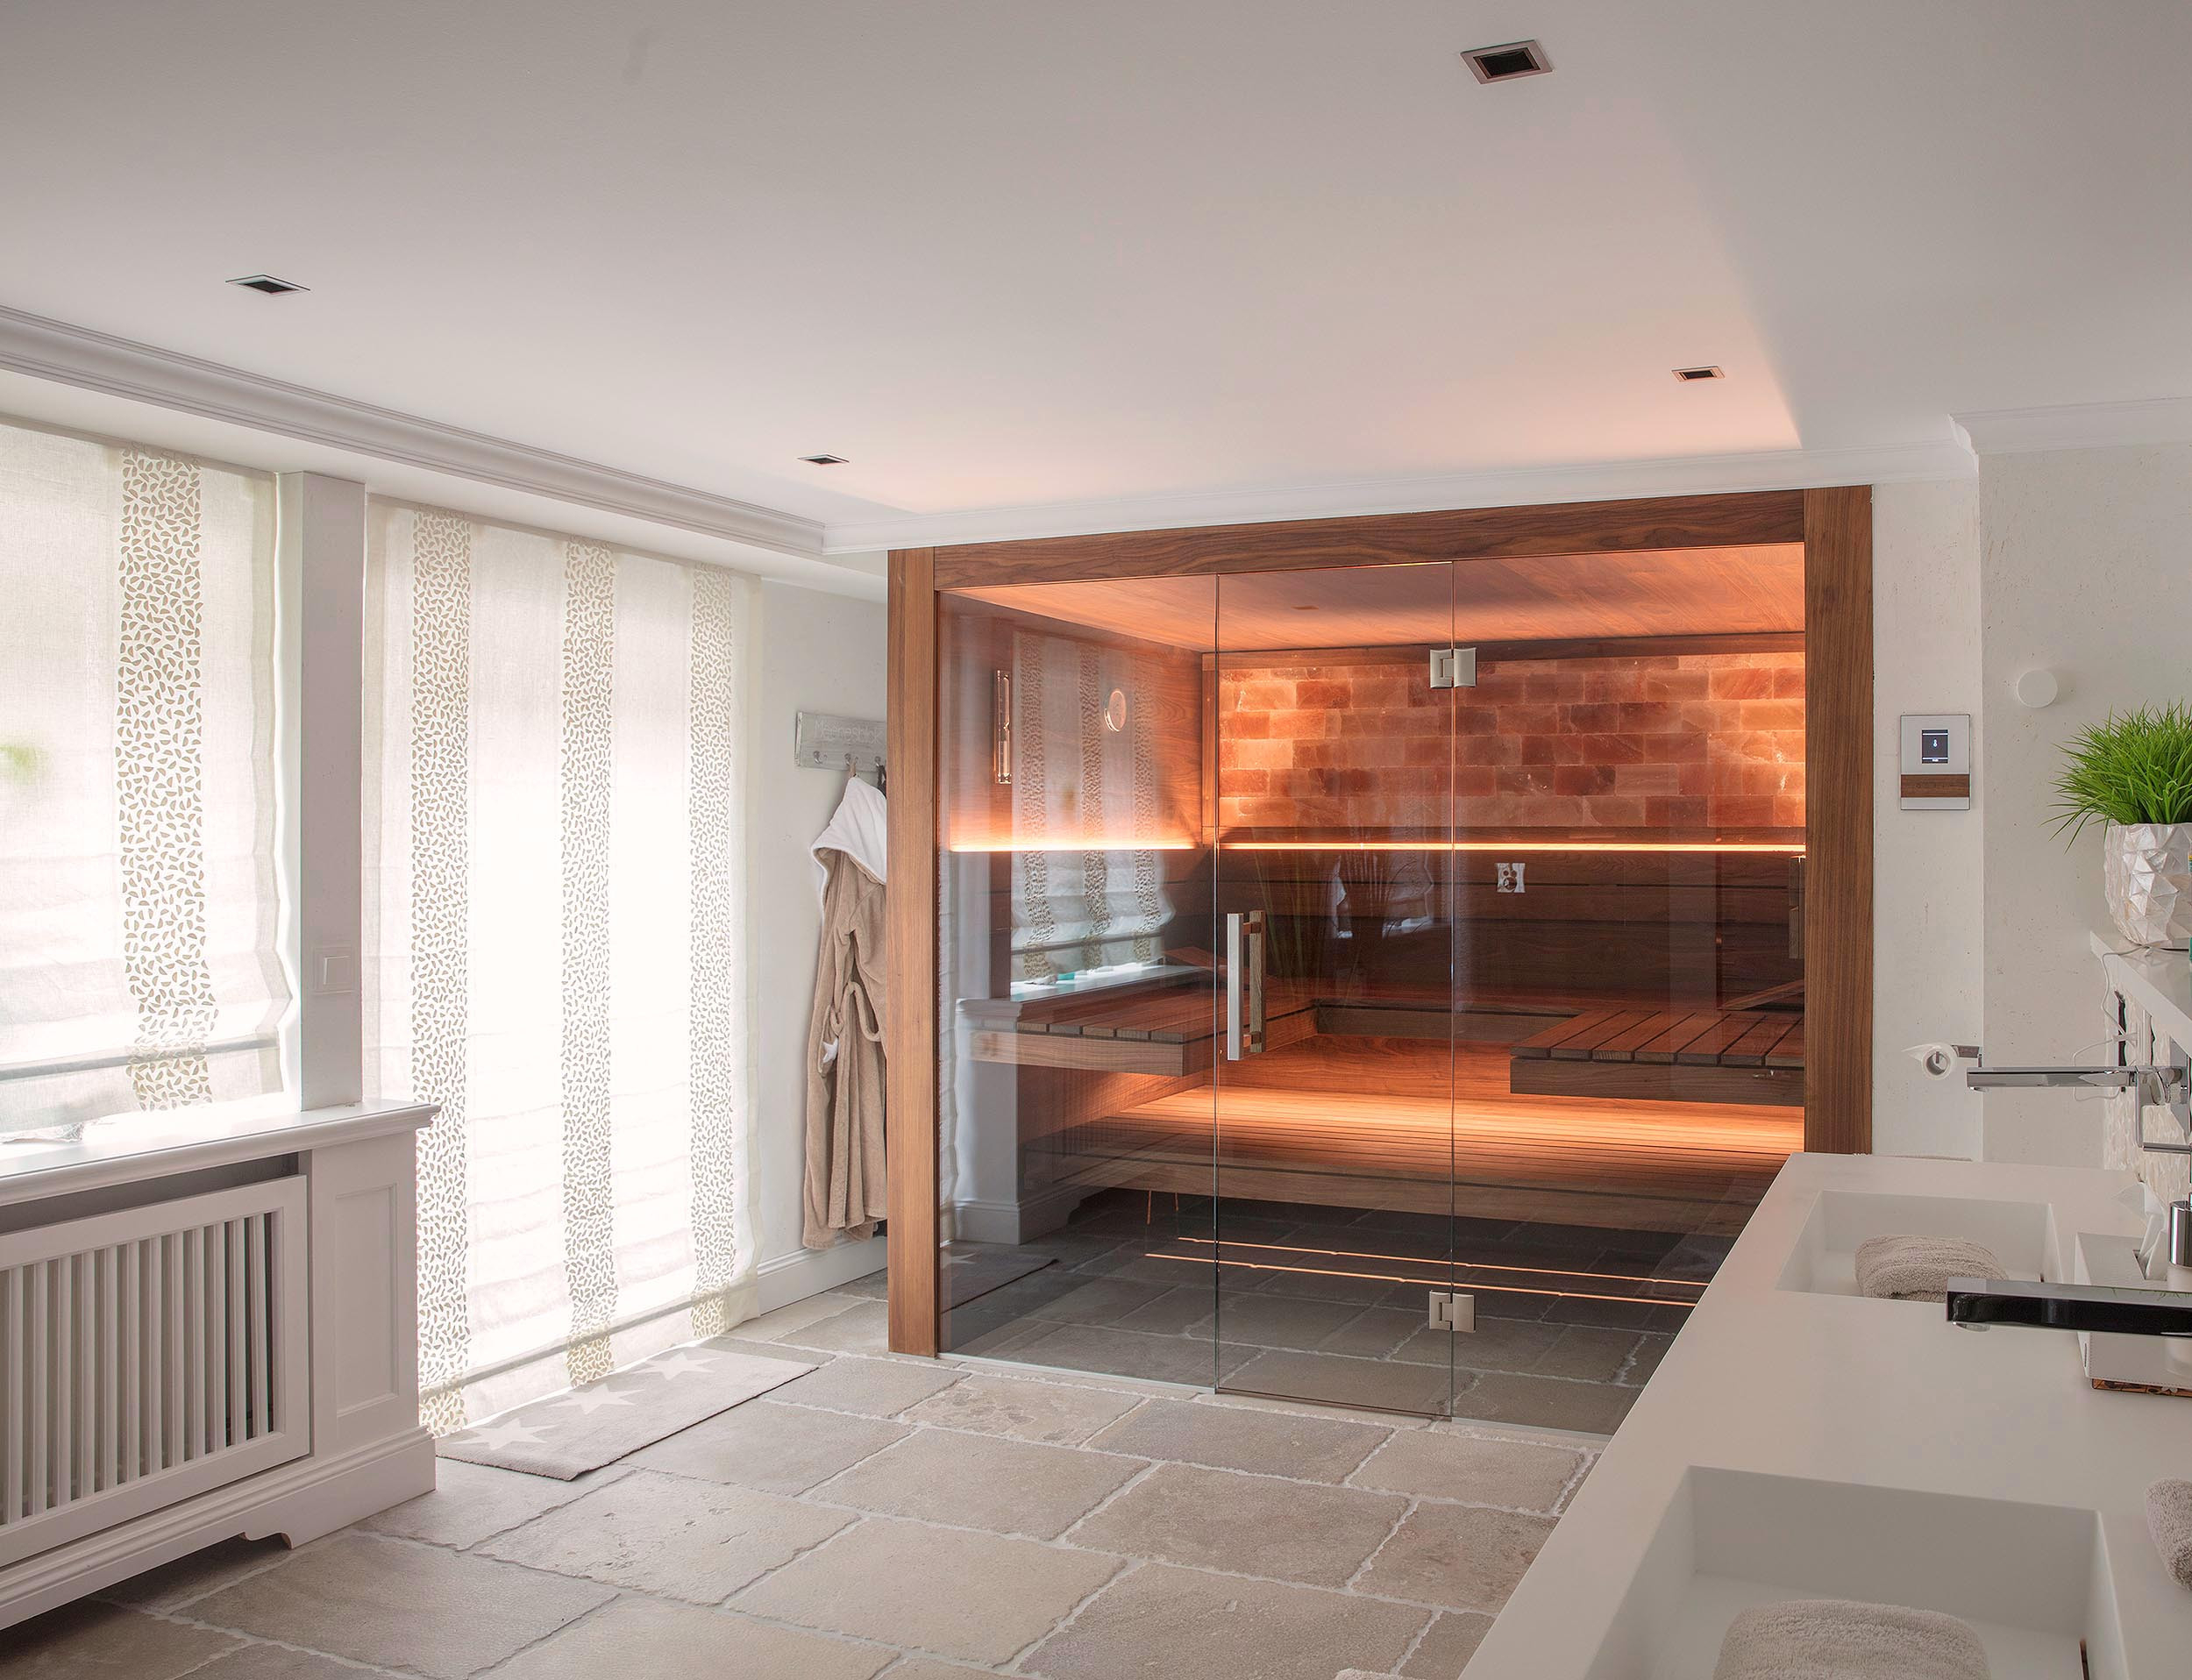 Moderne Sauna Im Bad | Direkt Vom Saunahersteller in Sauna Für Badezimmer